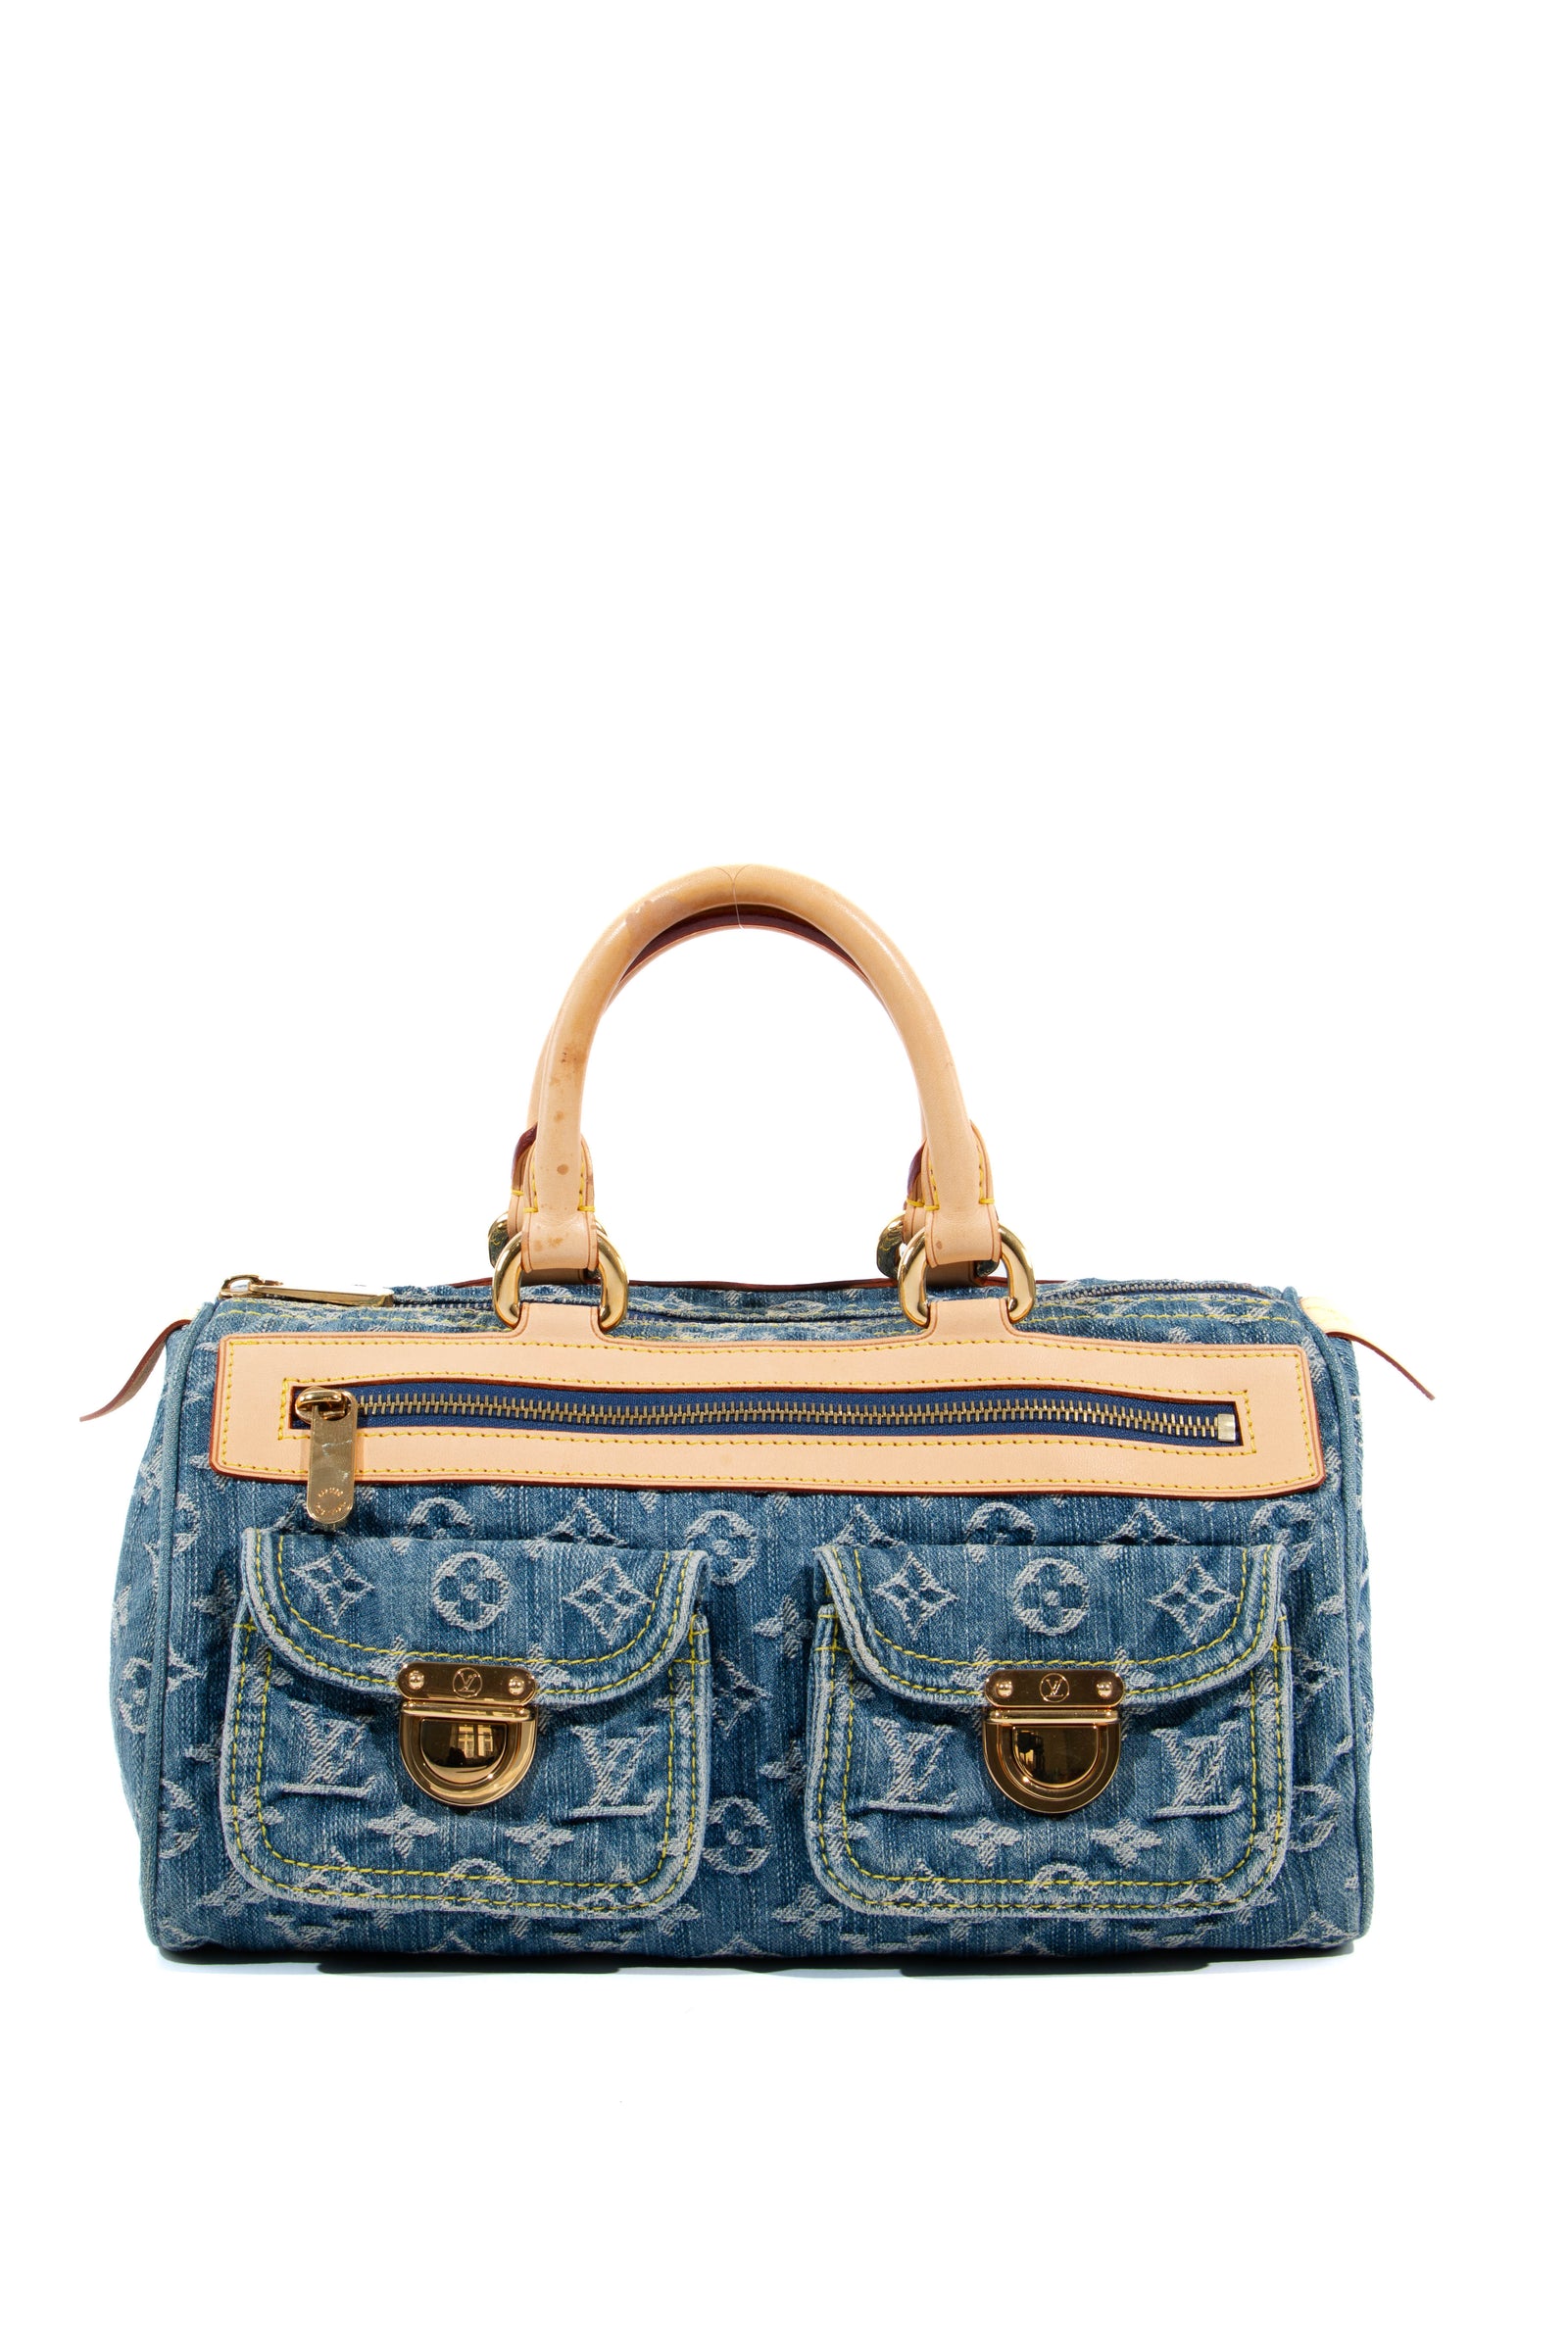 Louis+Vuitton+Neo+Speedy+Duffle+Medium+Blue+Denim for sale online